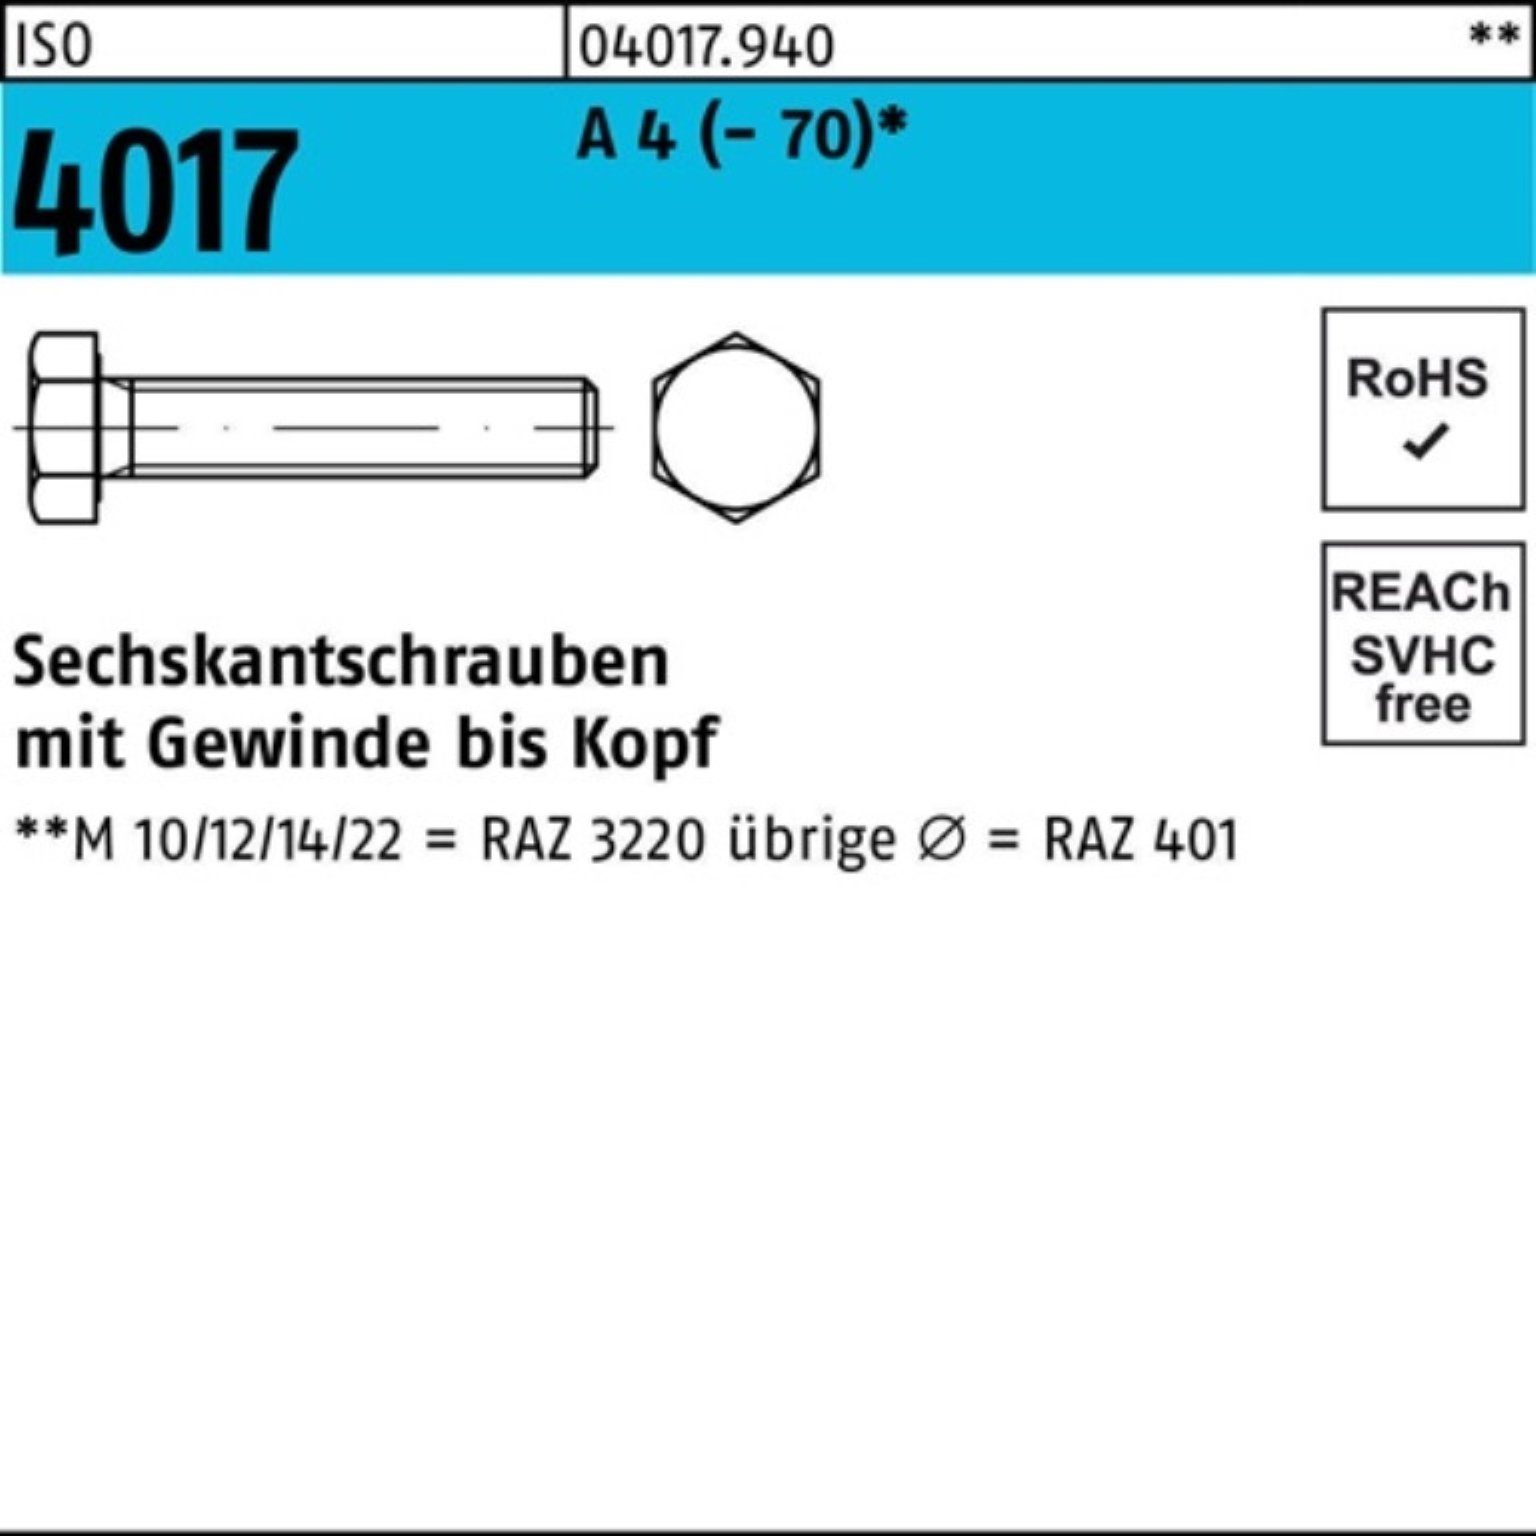 Bufab Sechskantschraube 100er Pack Sechskantschraube ISO 4017 VG M12x 95 A 4 (70) 1 Stück I